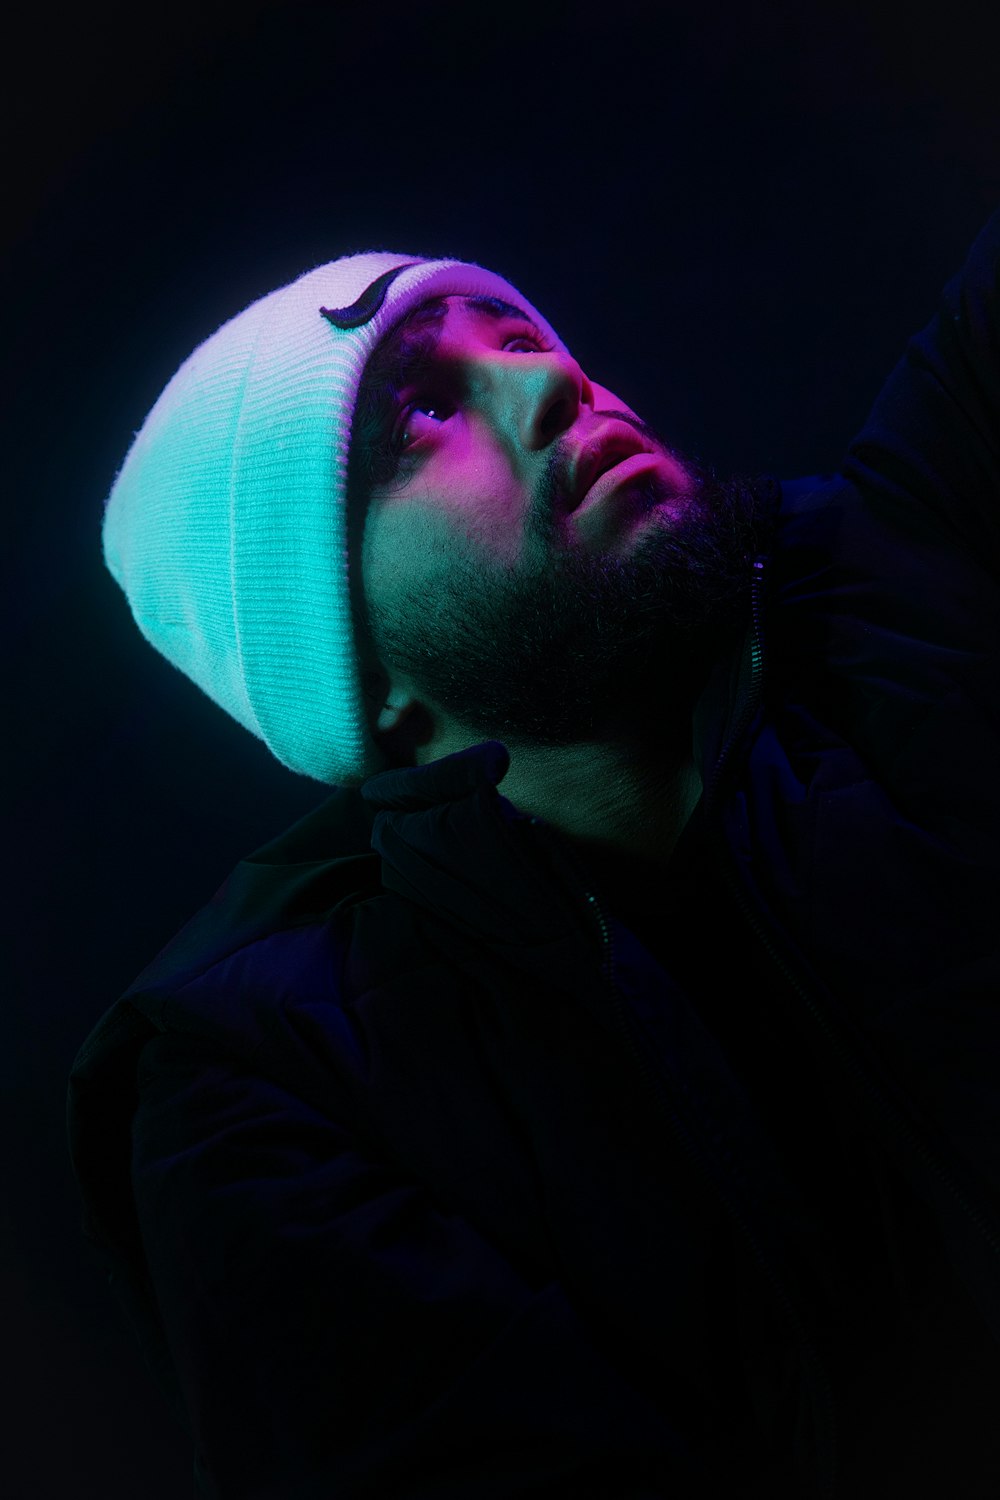 Ein Mann mit einer Mütze auf dem Kopf im Dunkeln